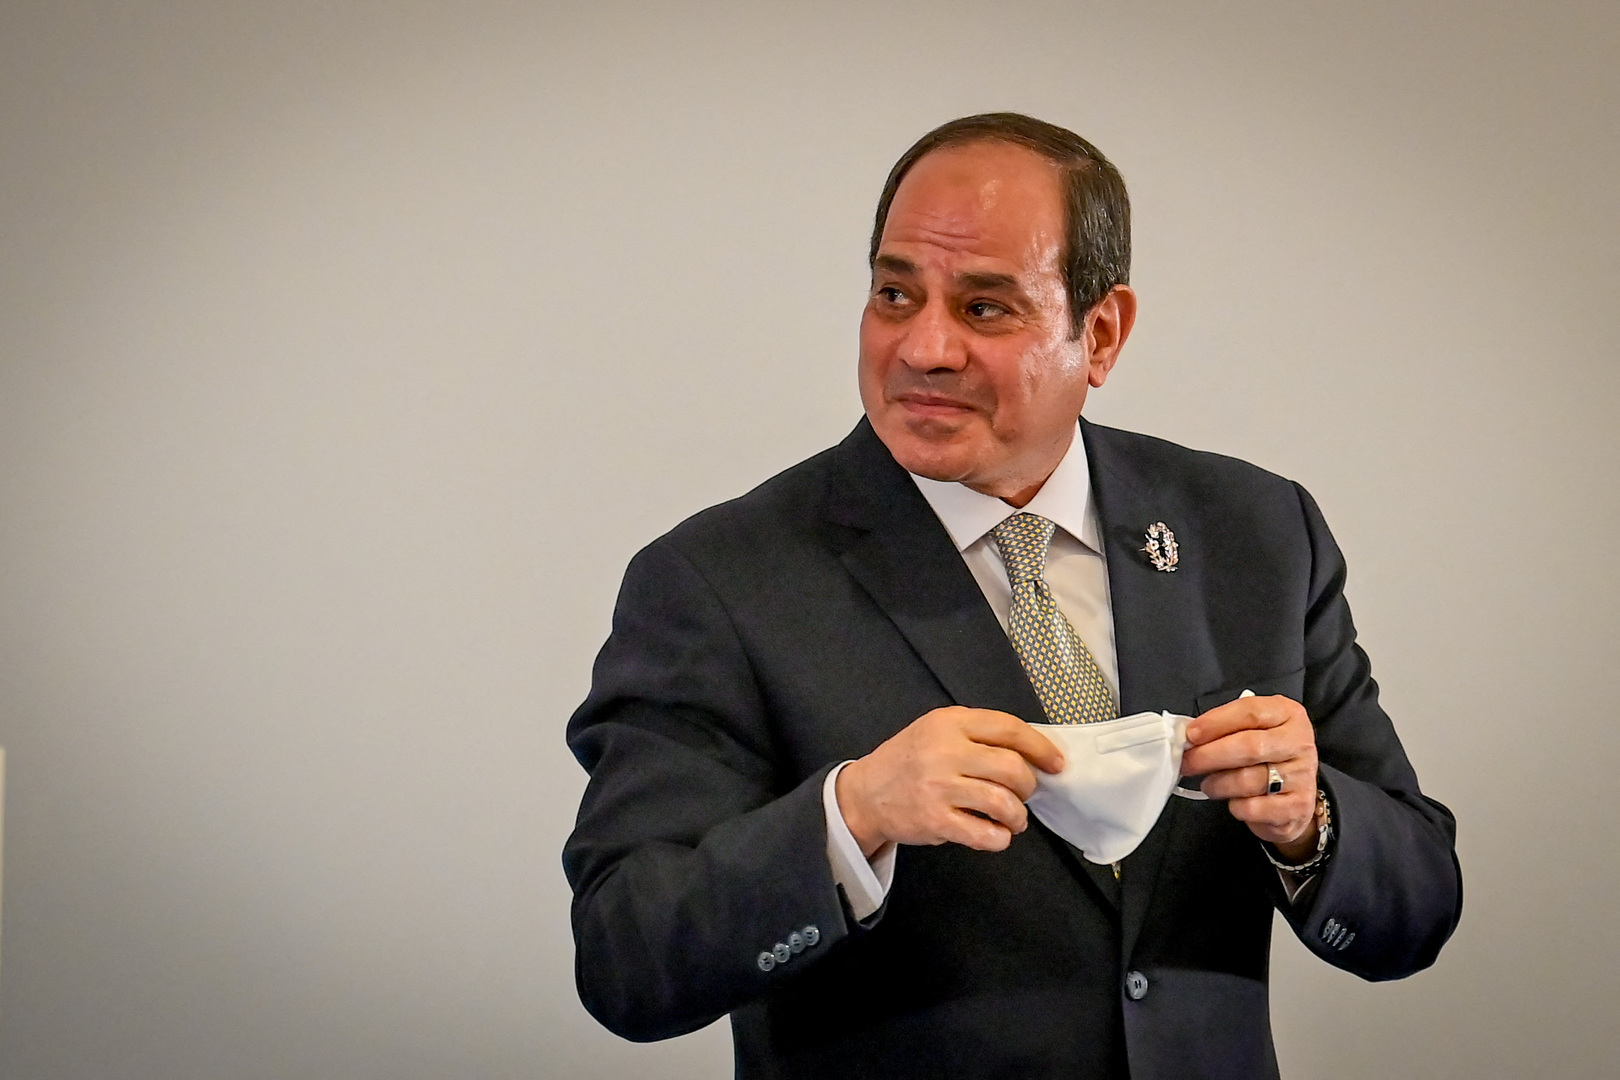 المتحدث باسم الرئاسة المصرية: السيسي يبحث في الكويت ملفات أمنية واقتصادية